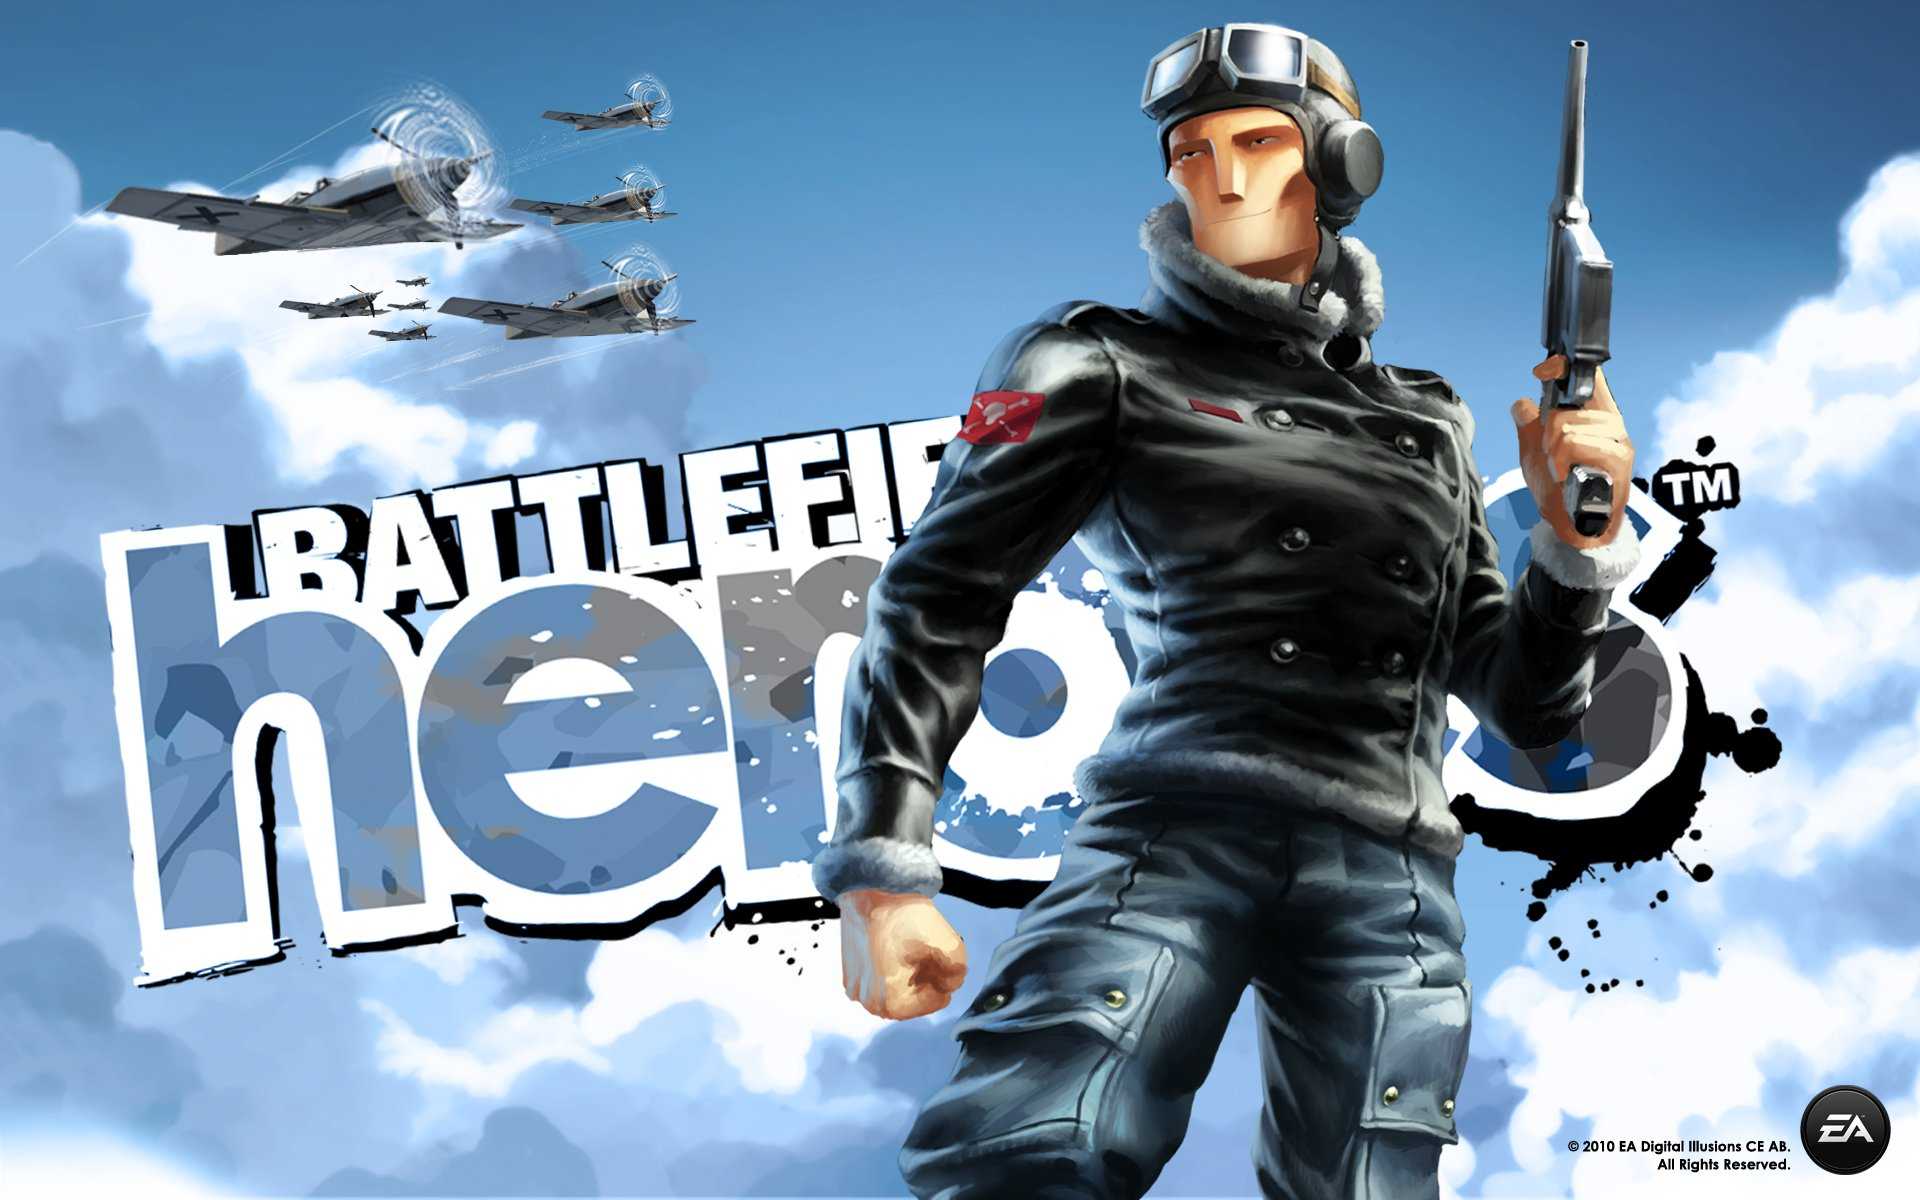 Battlefield heroes официальный сайт играть – battlefield heroes — дата выхода, системные требования и обзор игры battlefield heroes, официальный сайт, видео и скриншоты, скачать бесплатно торрент — mmo13